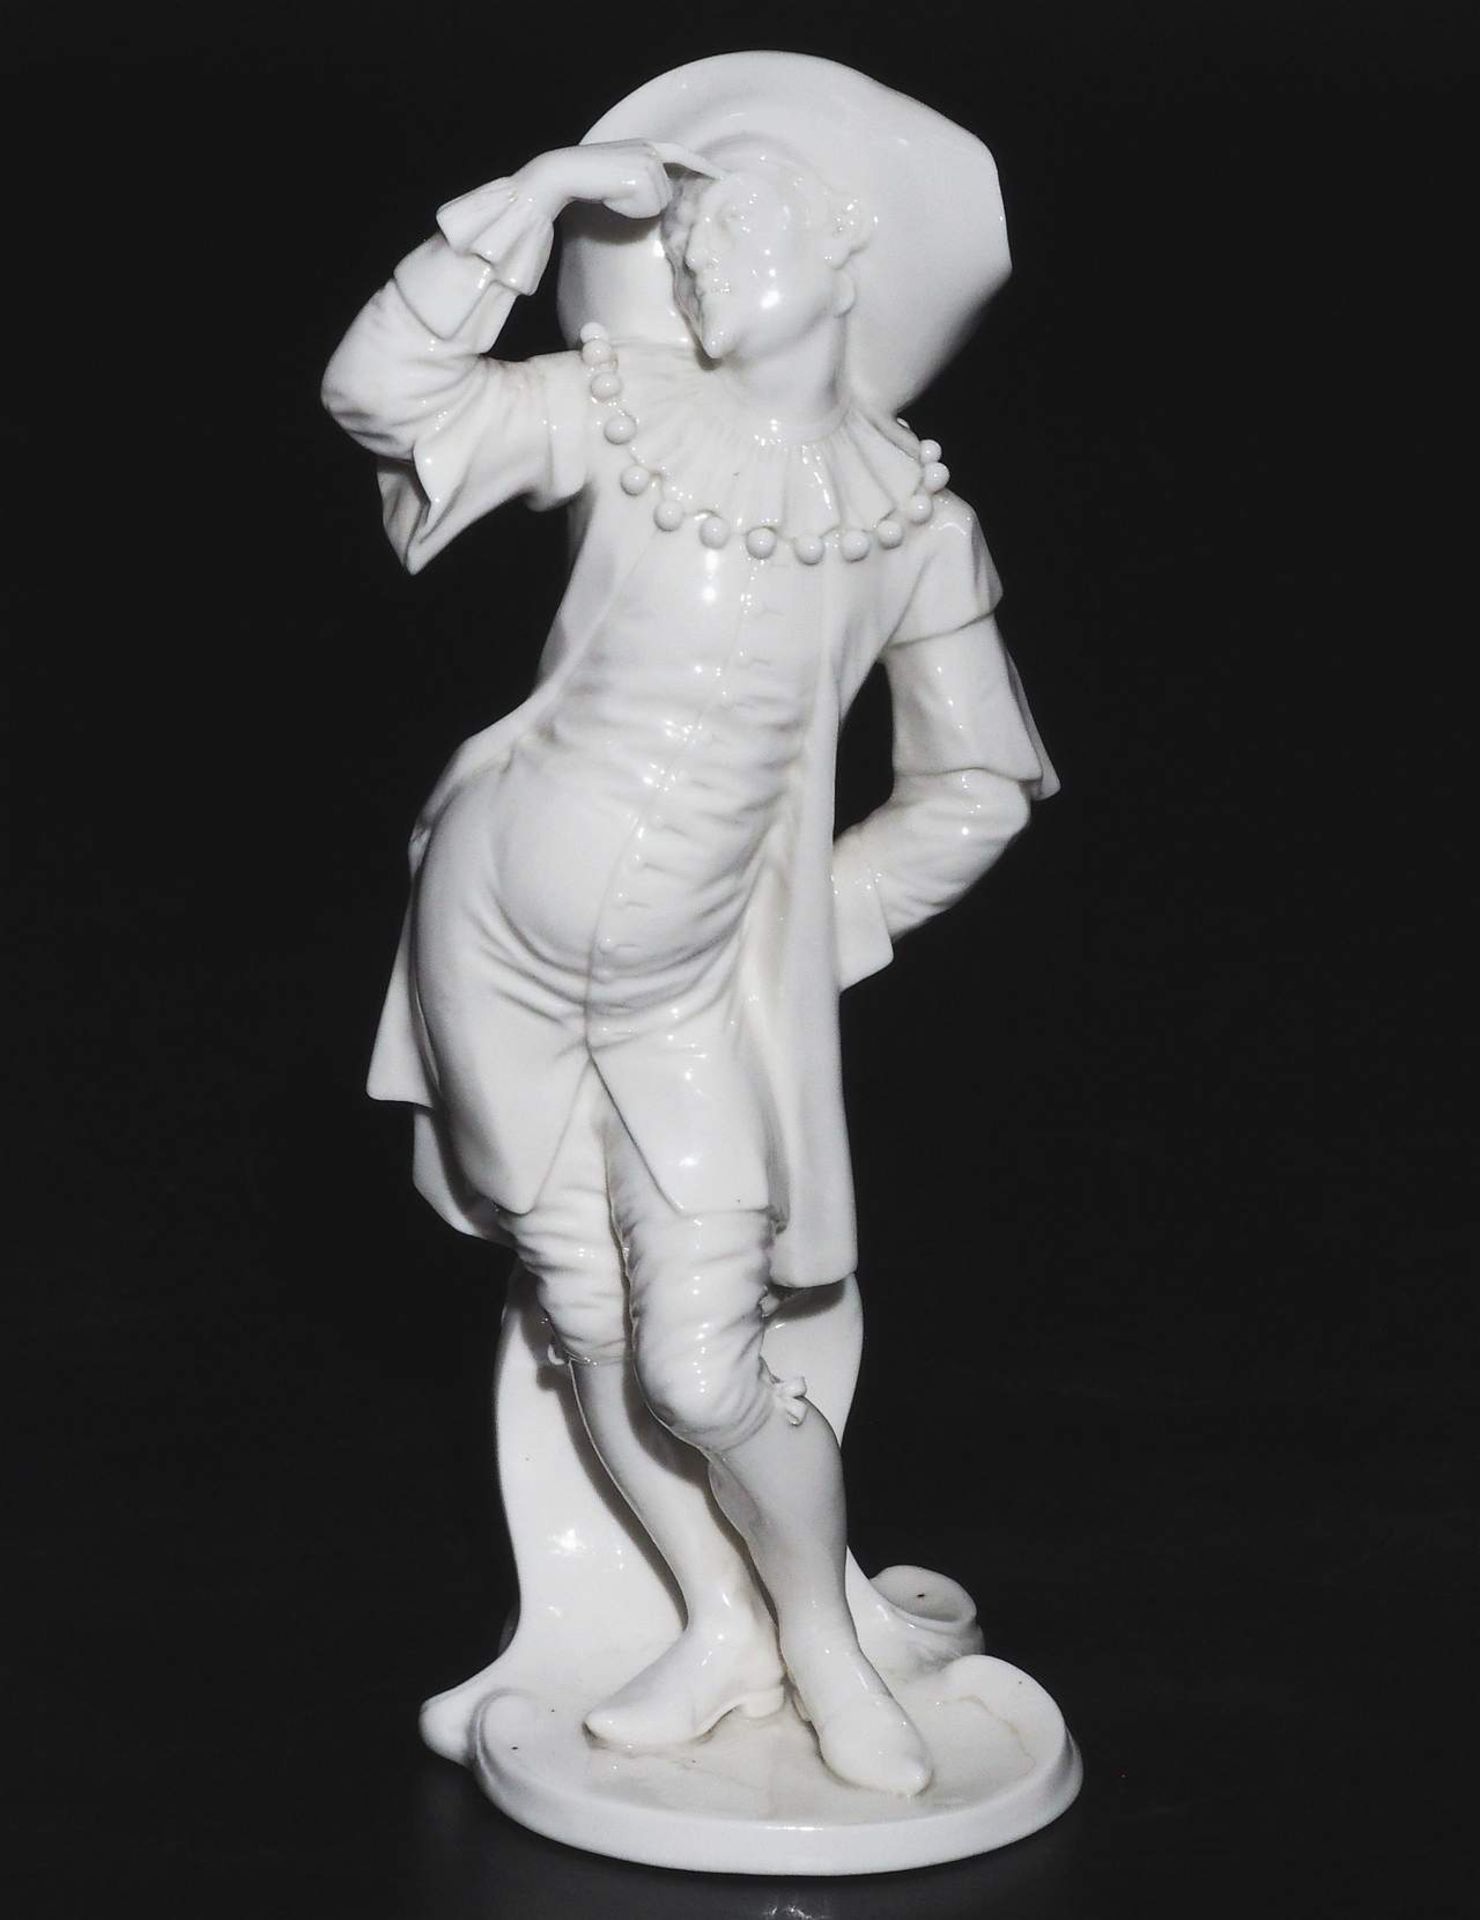 Dottore, Figurine der Commedia dell'arte. NYMPHENBURG, 20. Jahrhundert. - Image 2 of 7